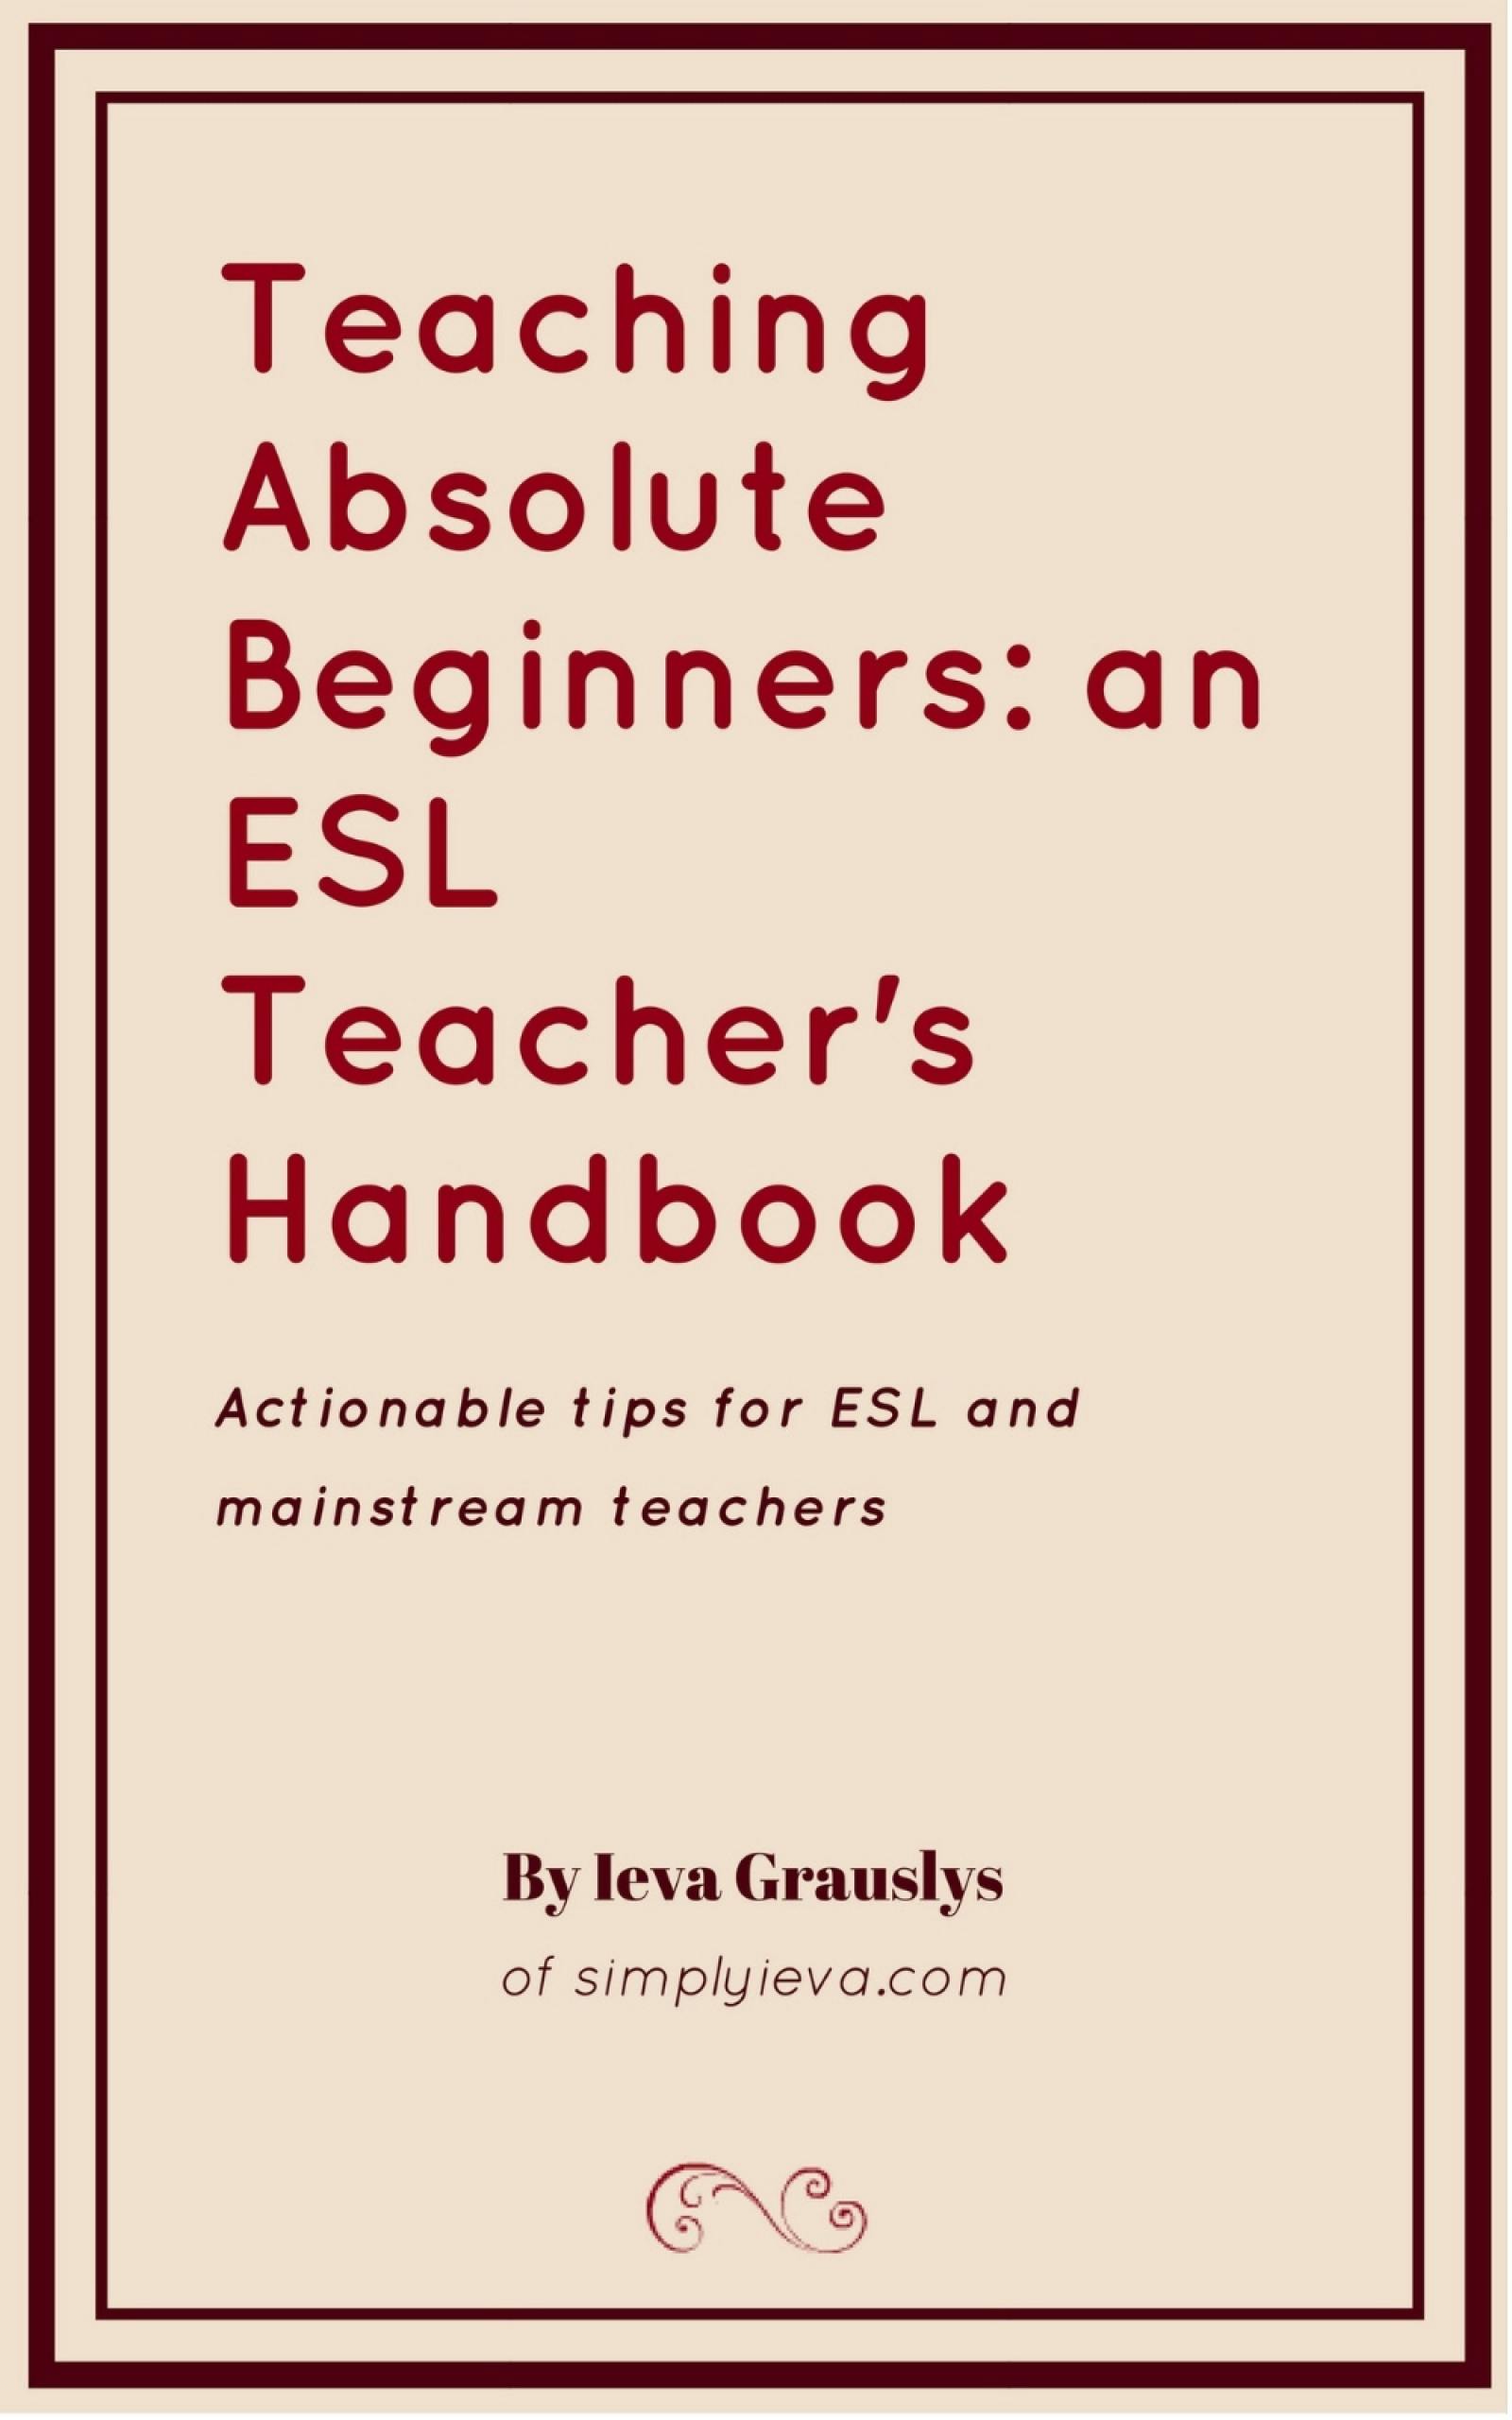 Teaching ESL Beginners - Ieva Grauslys